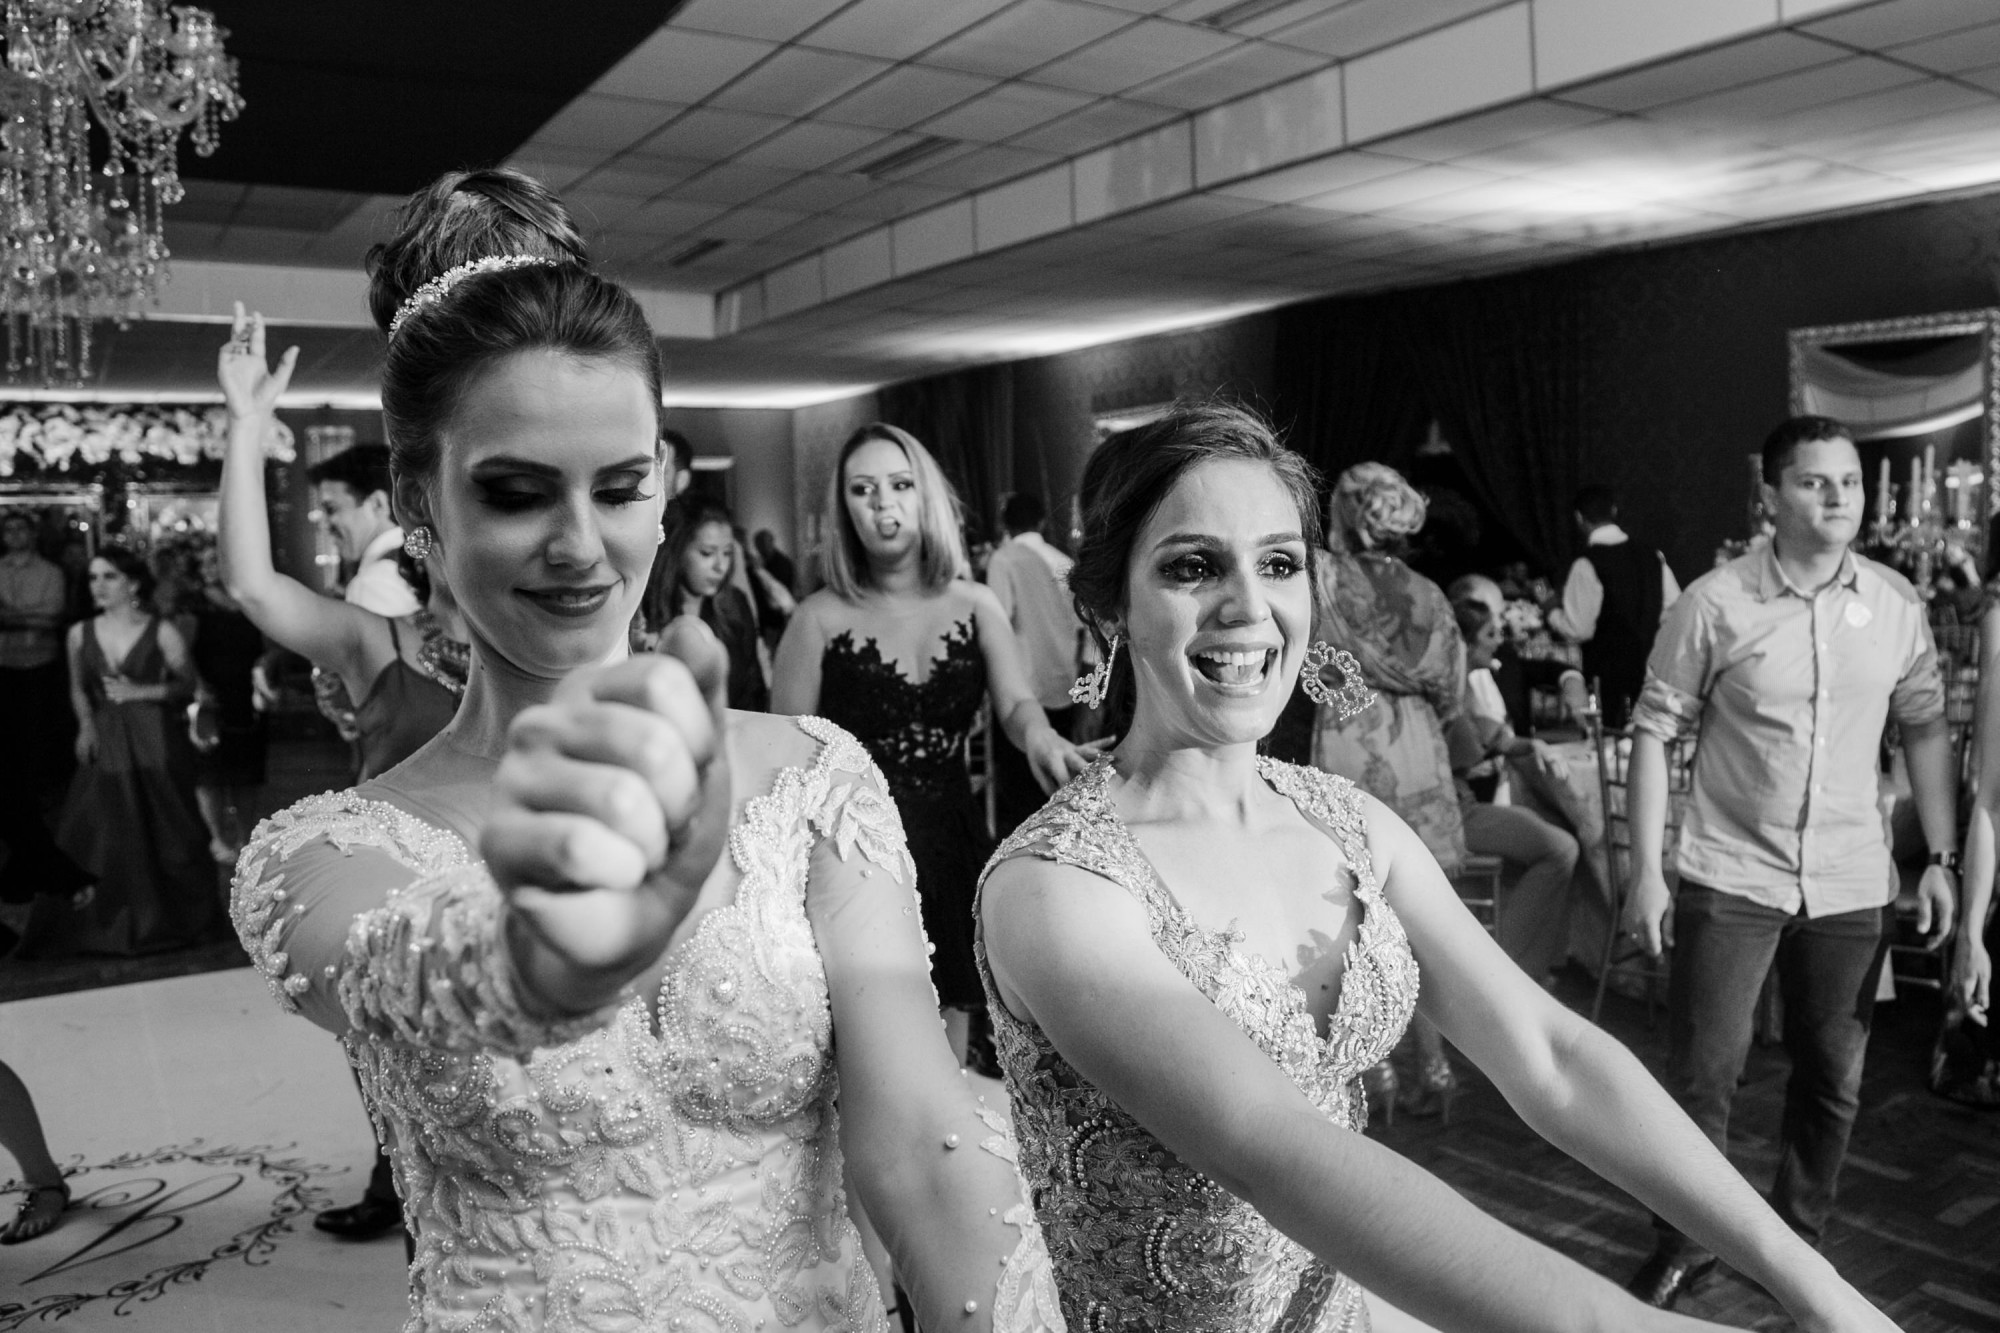 Casamento Anderson e Juliana Fioreli em Iporã Paraná - por Lorran Souza e Léia Sotile - Fotografos de casamentos - JA-4200